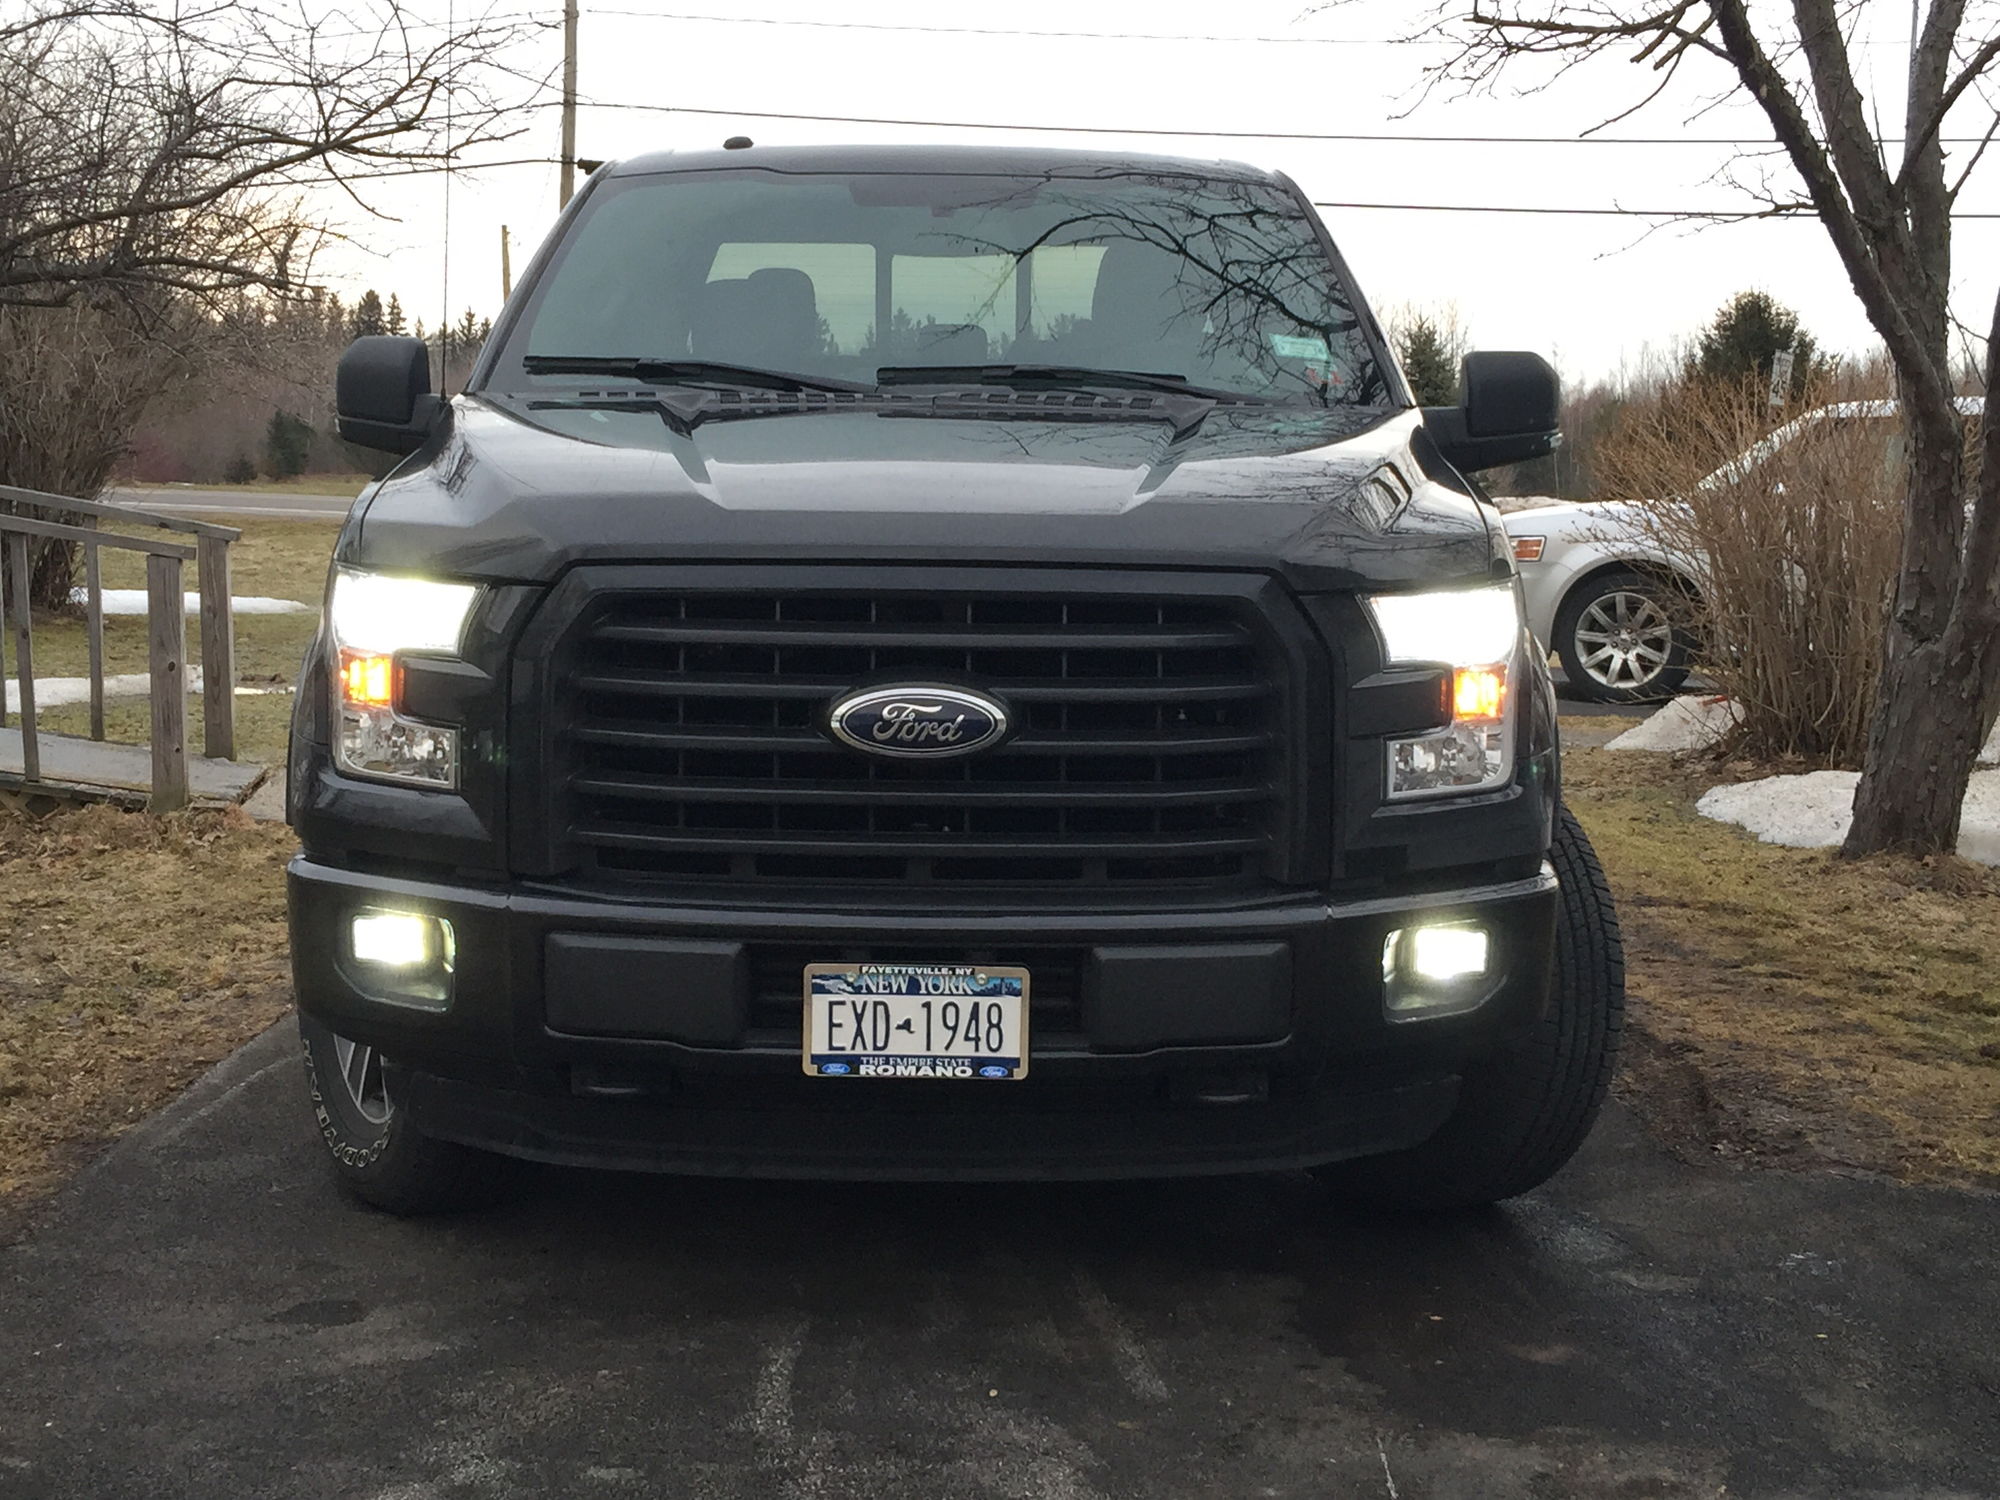 98 Ford f150 headlight adjustment #6